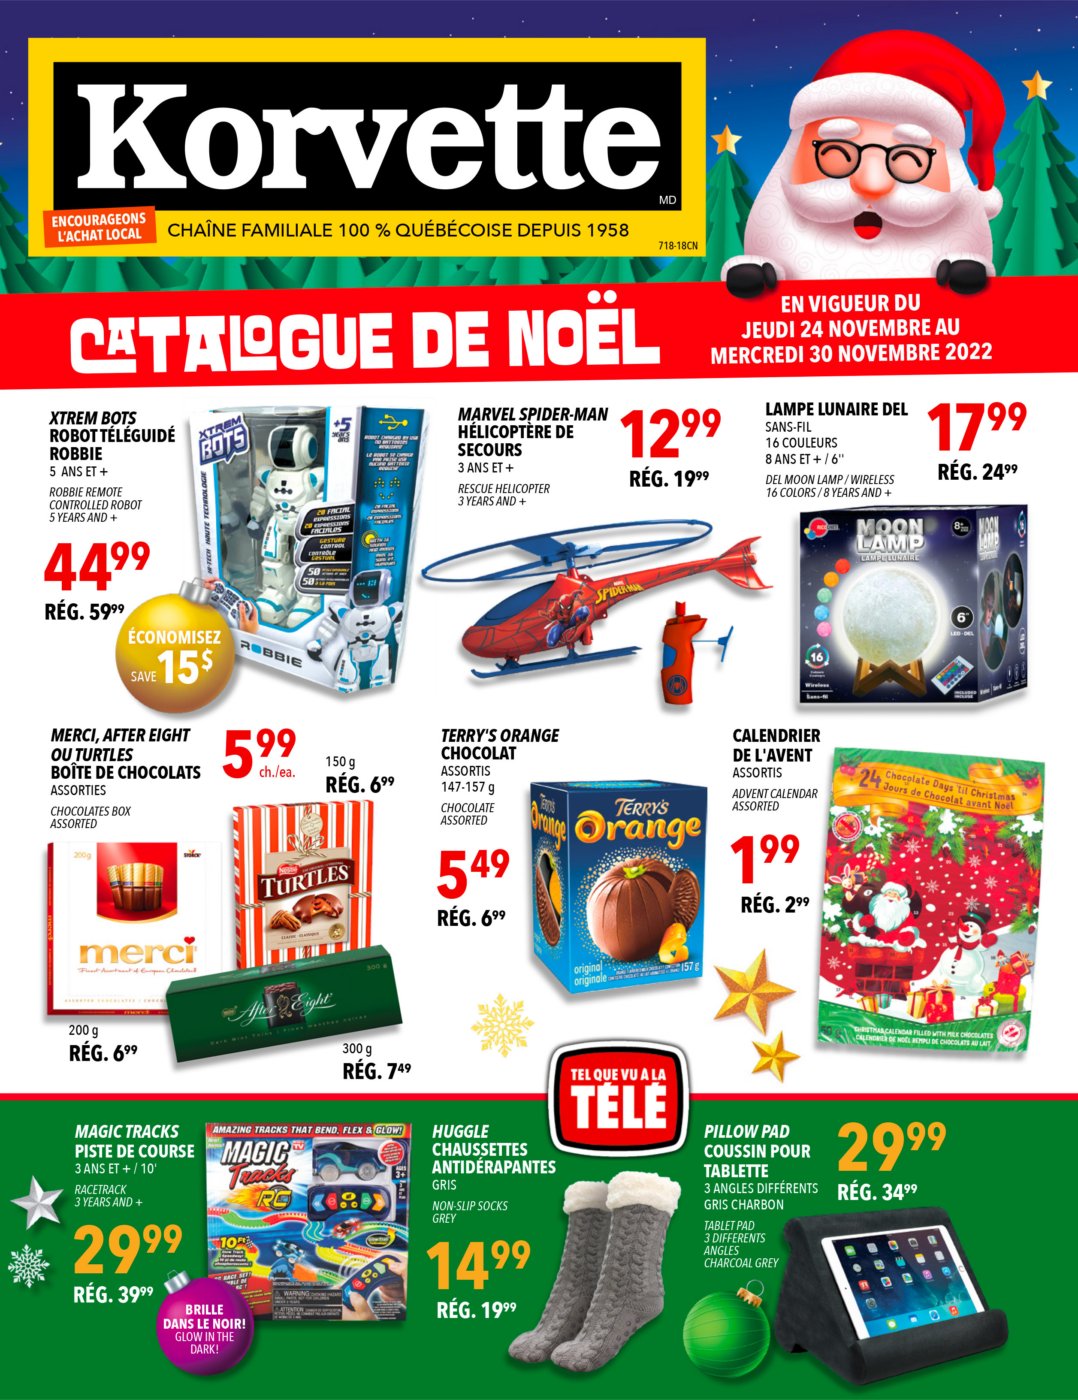 Circulaire Korvette - Catalogue de Noël - Page 1